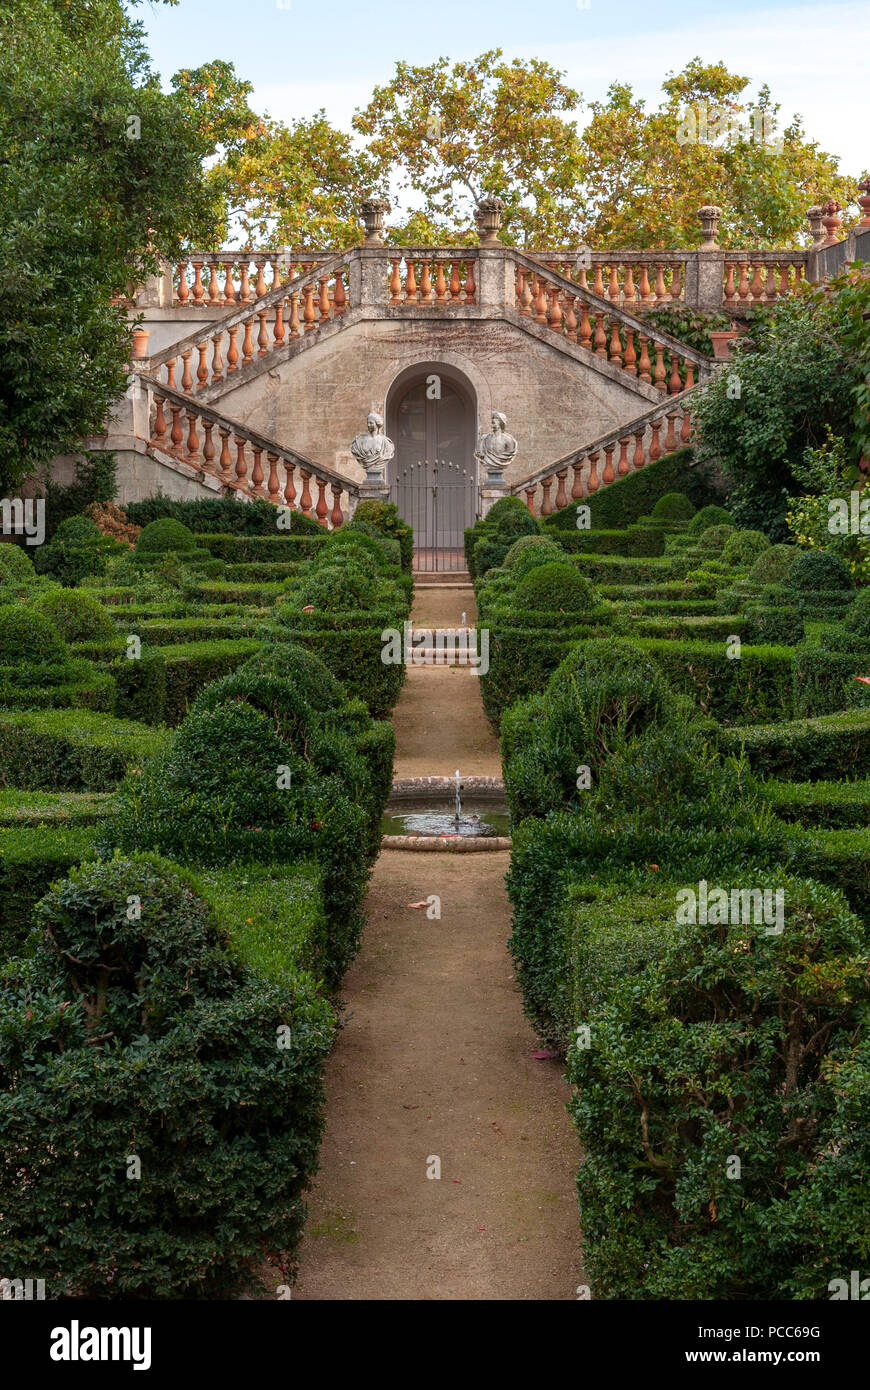 Barcelona, Parc del Laberint d'Horta, Buchsbaumgarten mit doppelläufiger Treppe. Entwicklung von 1791 bis 1880. Barcelona, Catalonia, Spain |Parc del  Stock Photo